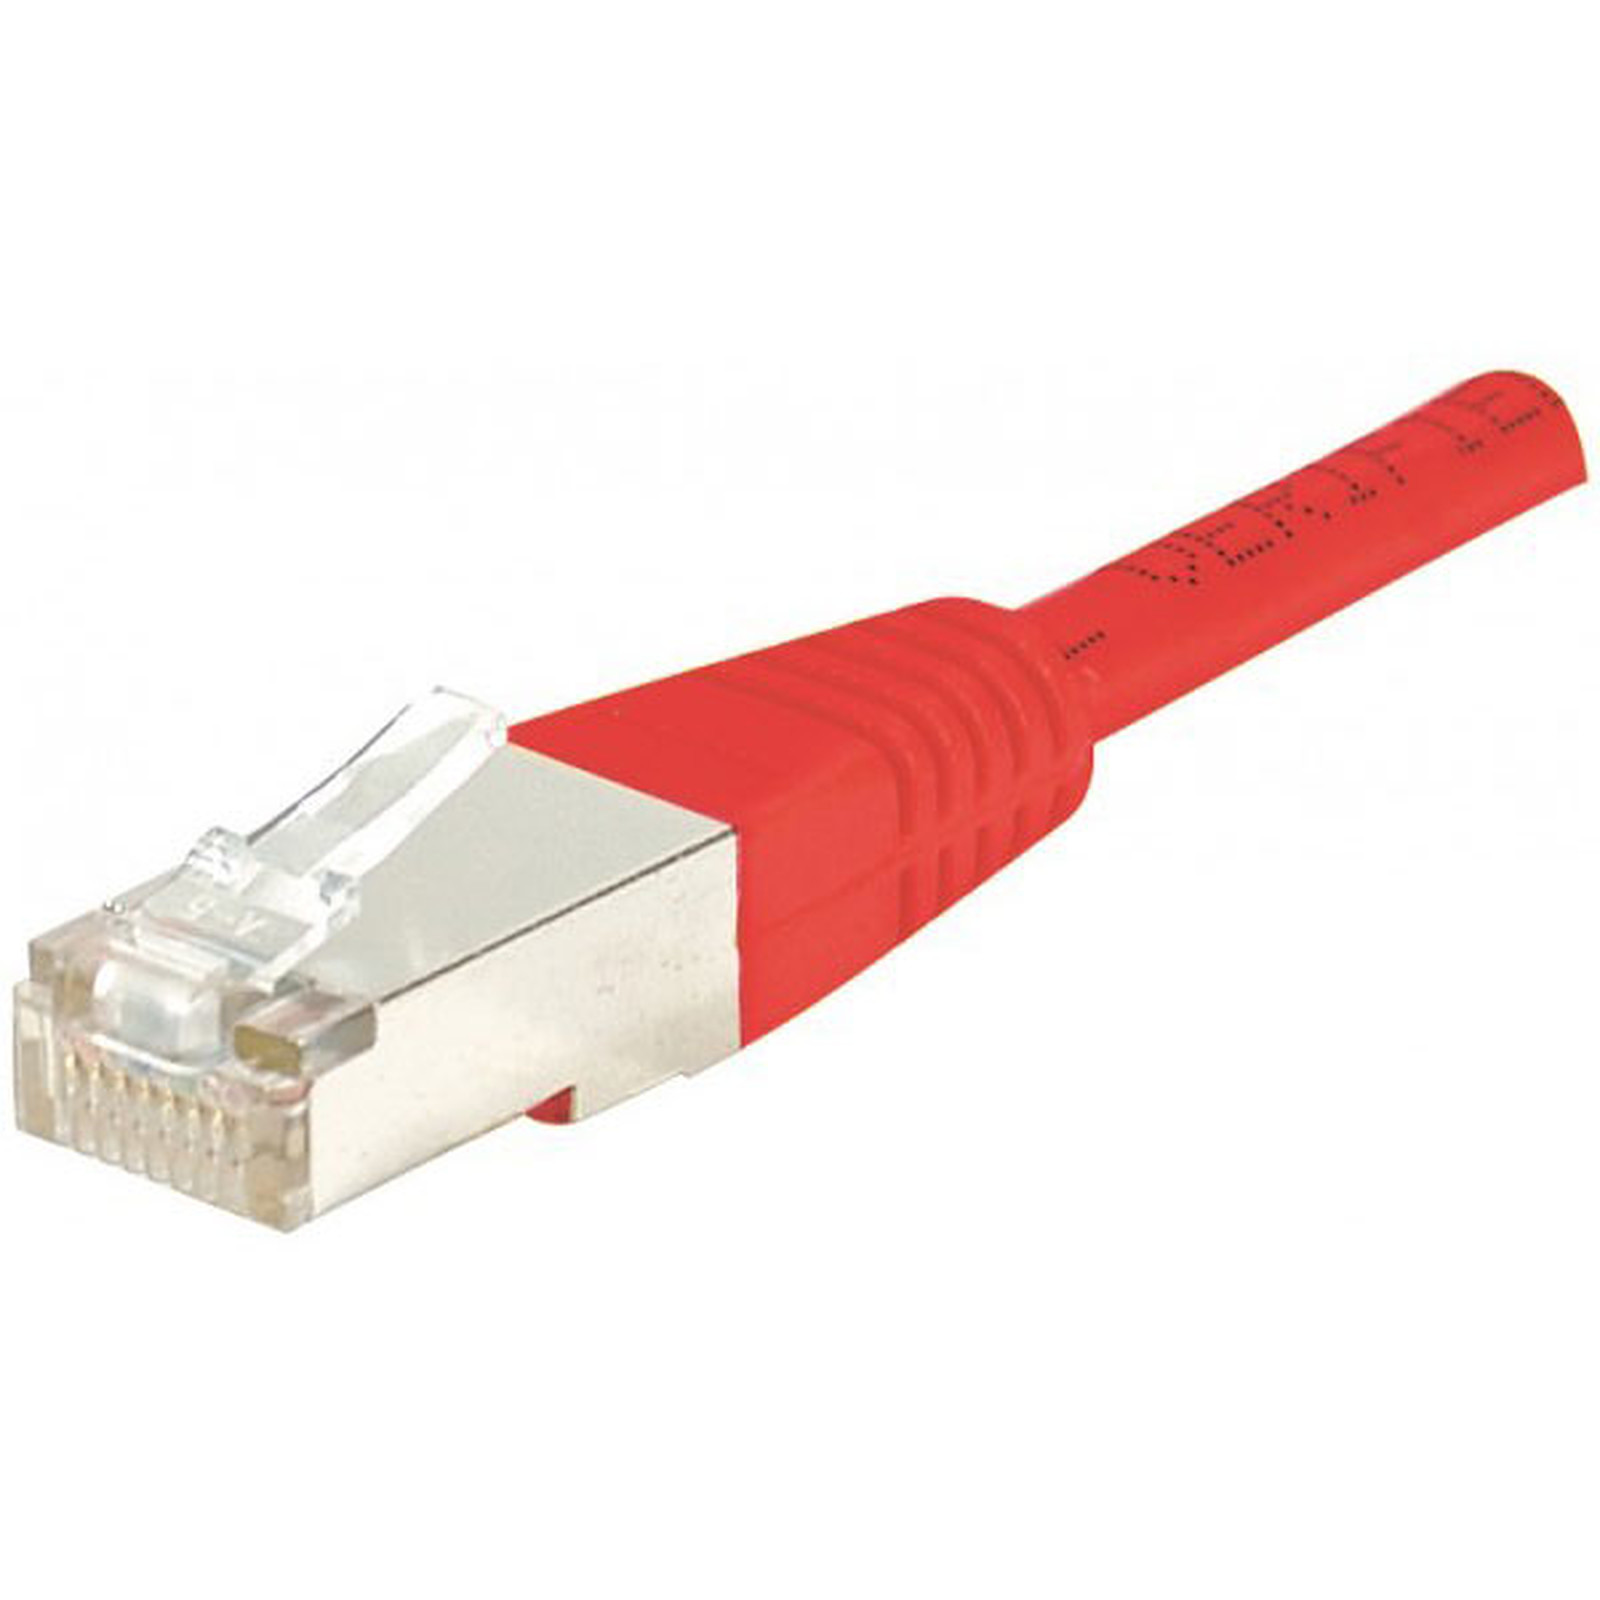 Cable RJ45 categorie 5e F/UTP 1 m (Rouge) - Cable RJ45 Generique